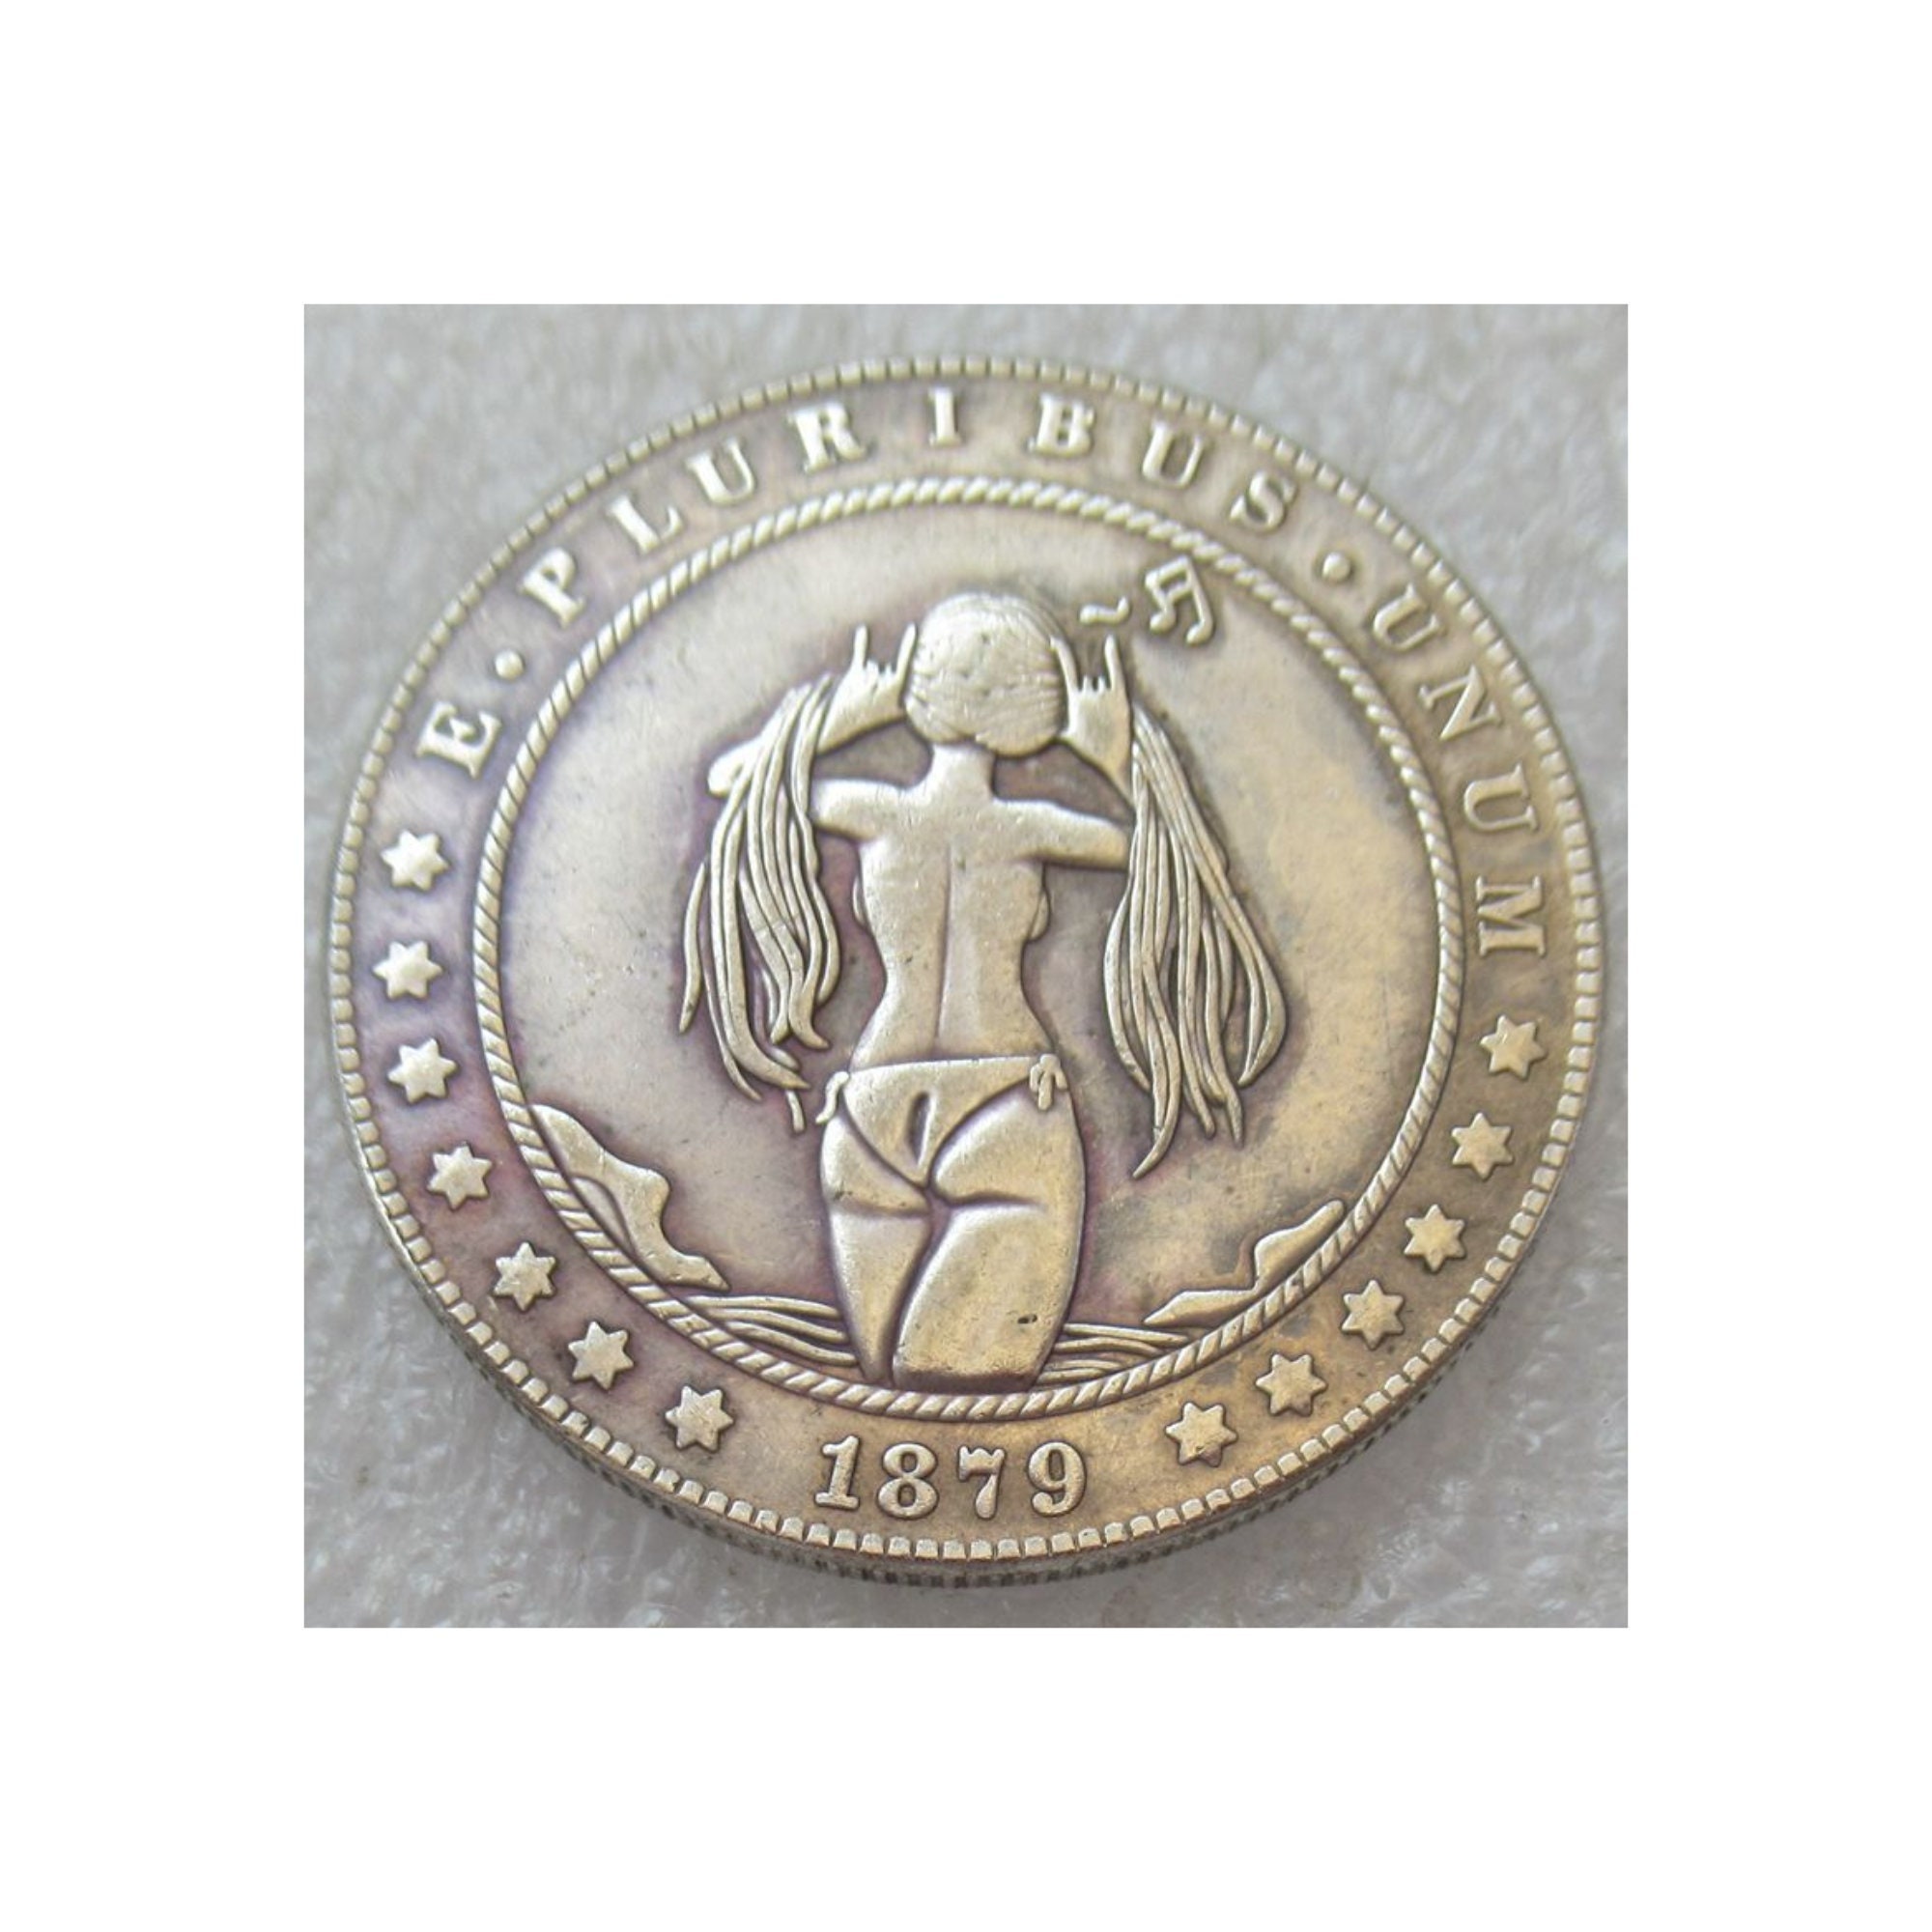 2016 Niue Yu-Gi-Oh Yami Yugi 1 oz 999 Silver Coin OGP Box/COA #0686/5000  -RARE- - Big Bear Coin & Collectible